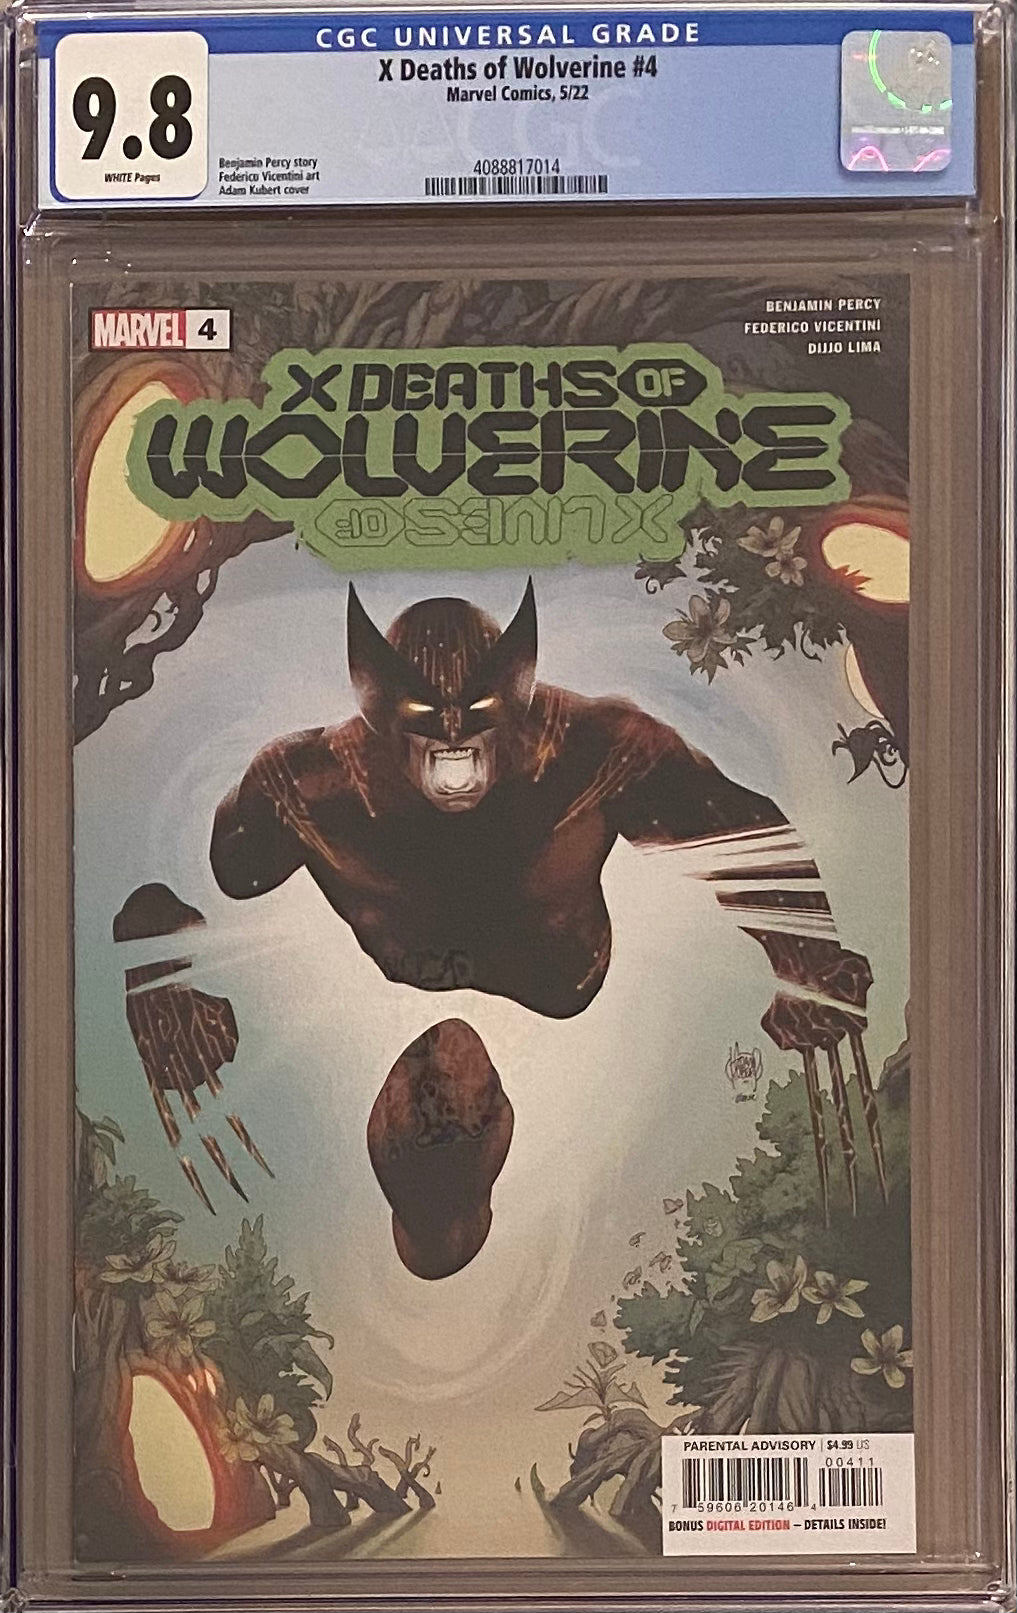 X Deaths of Wolverine #4 CGC 9.8